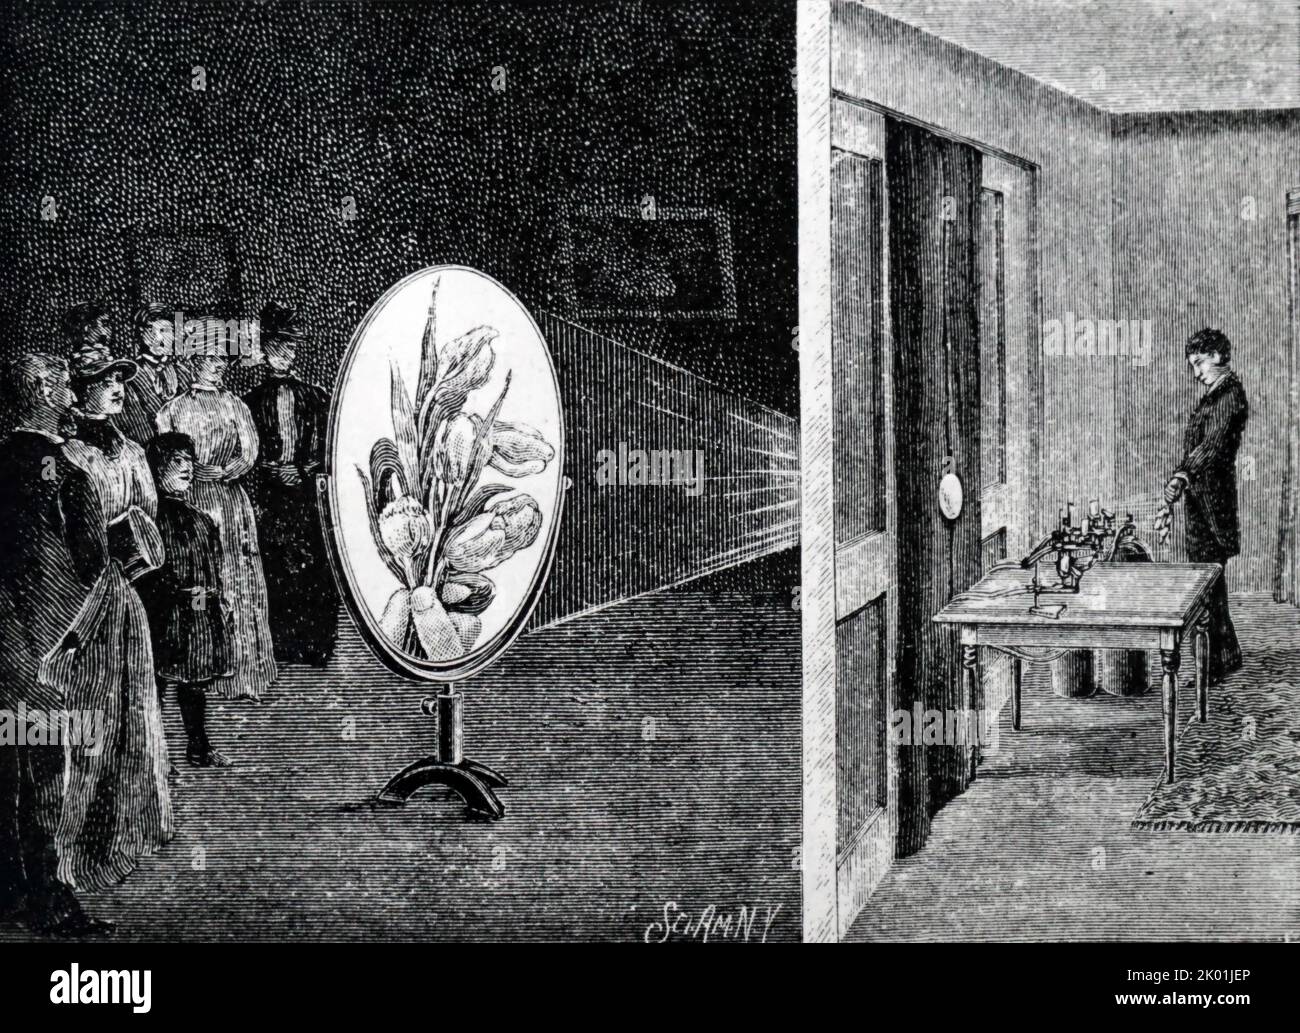 Utilizzare un megascope per proiettare oggetti opachi (fiori in mano del dimostratore). Da la Science Illustree, Parigi, 1891. Foto Stock